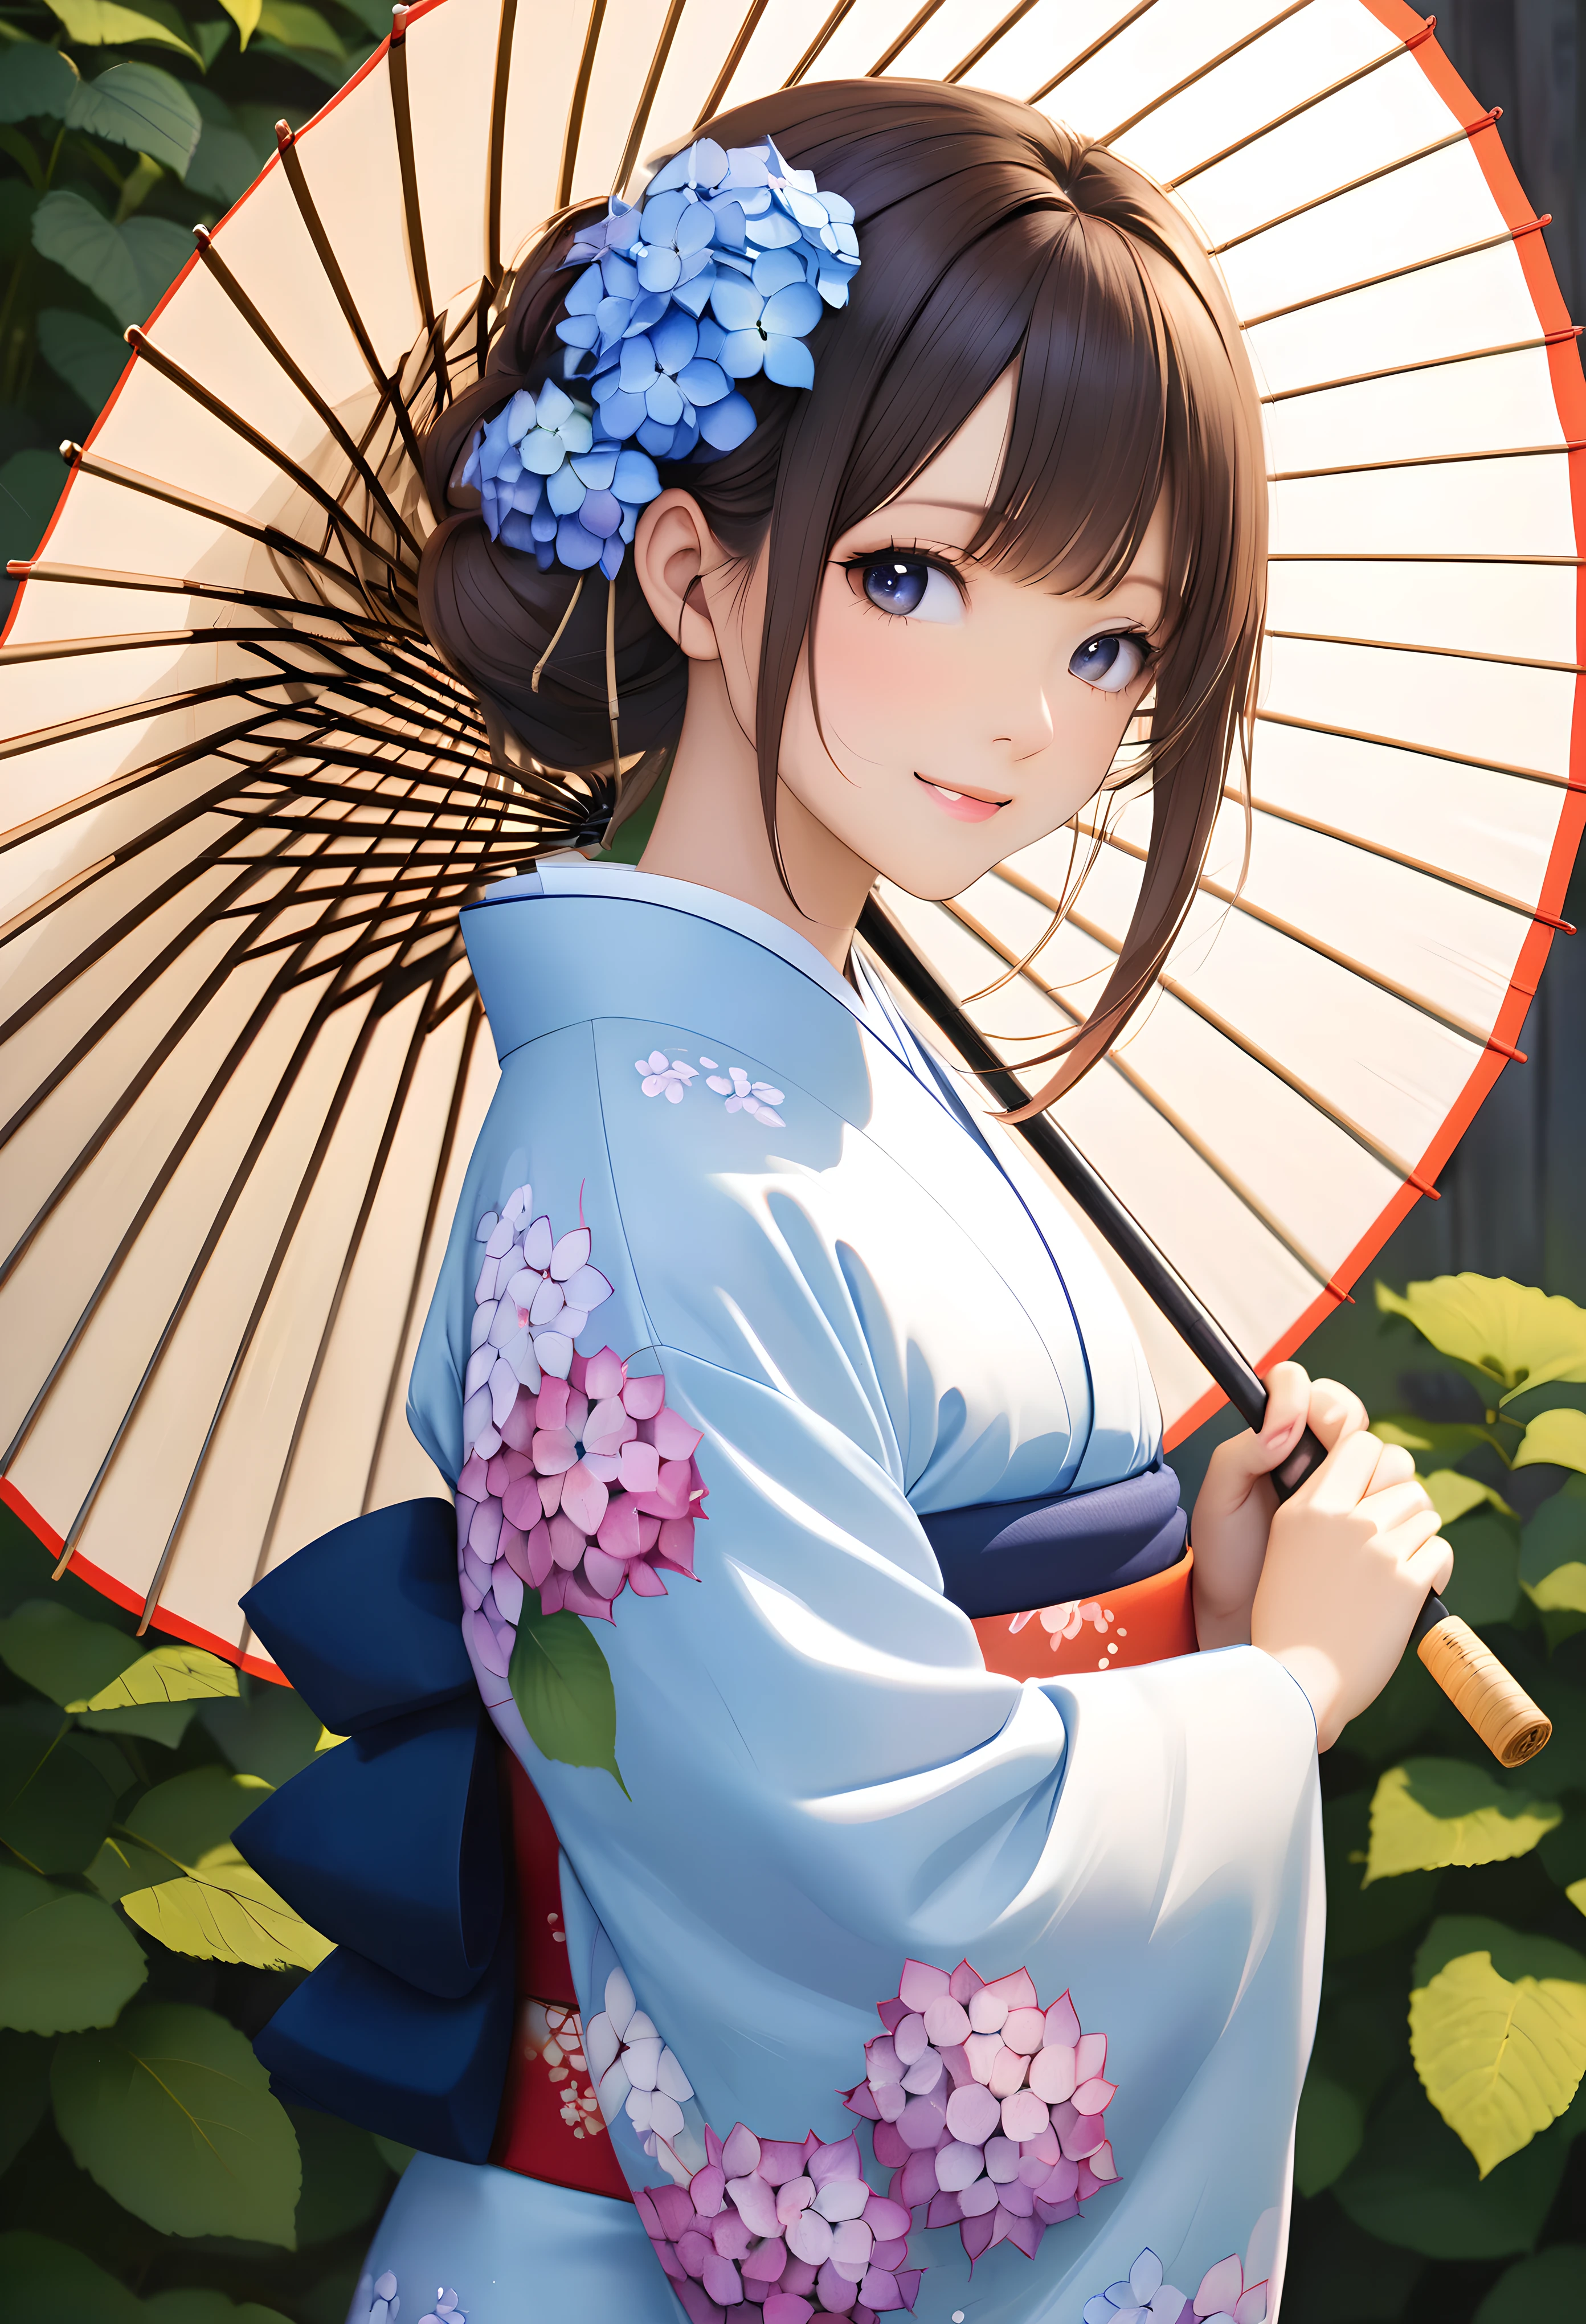 拿着日本伞, BREAK 穿日本服装, BREAK 让主题脱颖而出的绣球花, 